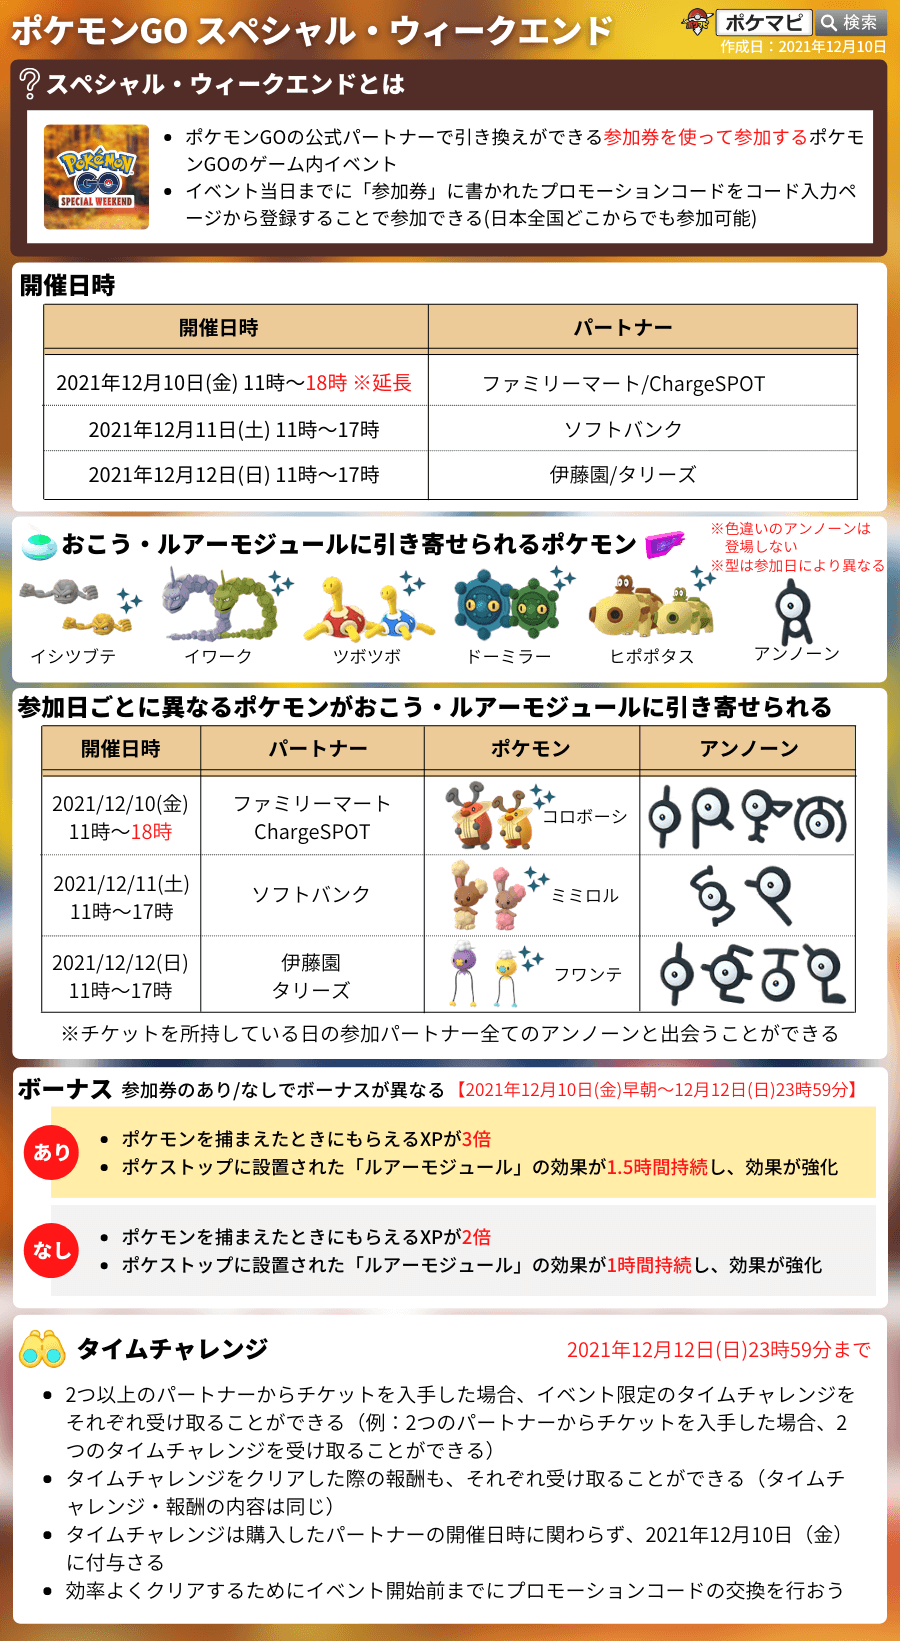 ポケモンgo スペシャル ウィークエンド21開催 イベント内容 参加券入手方法